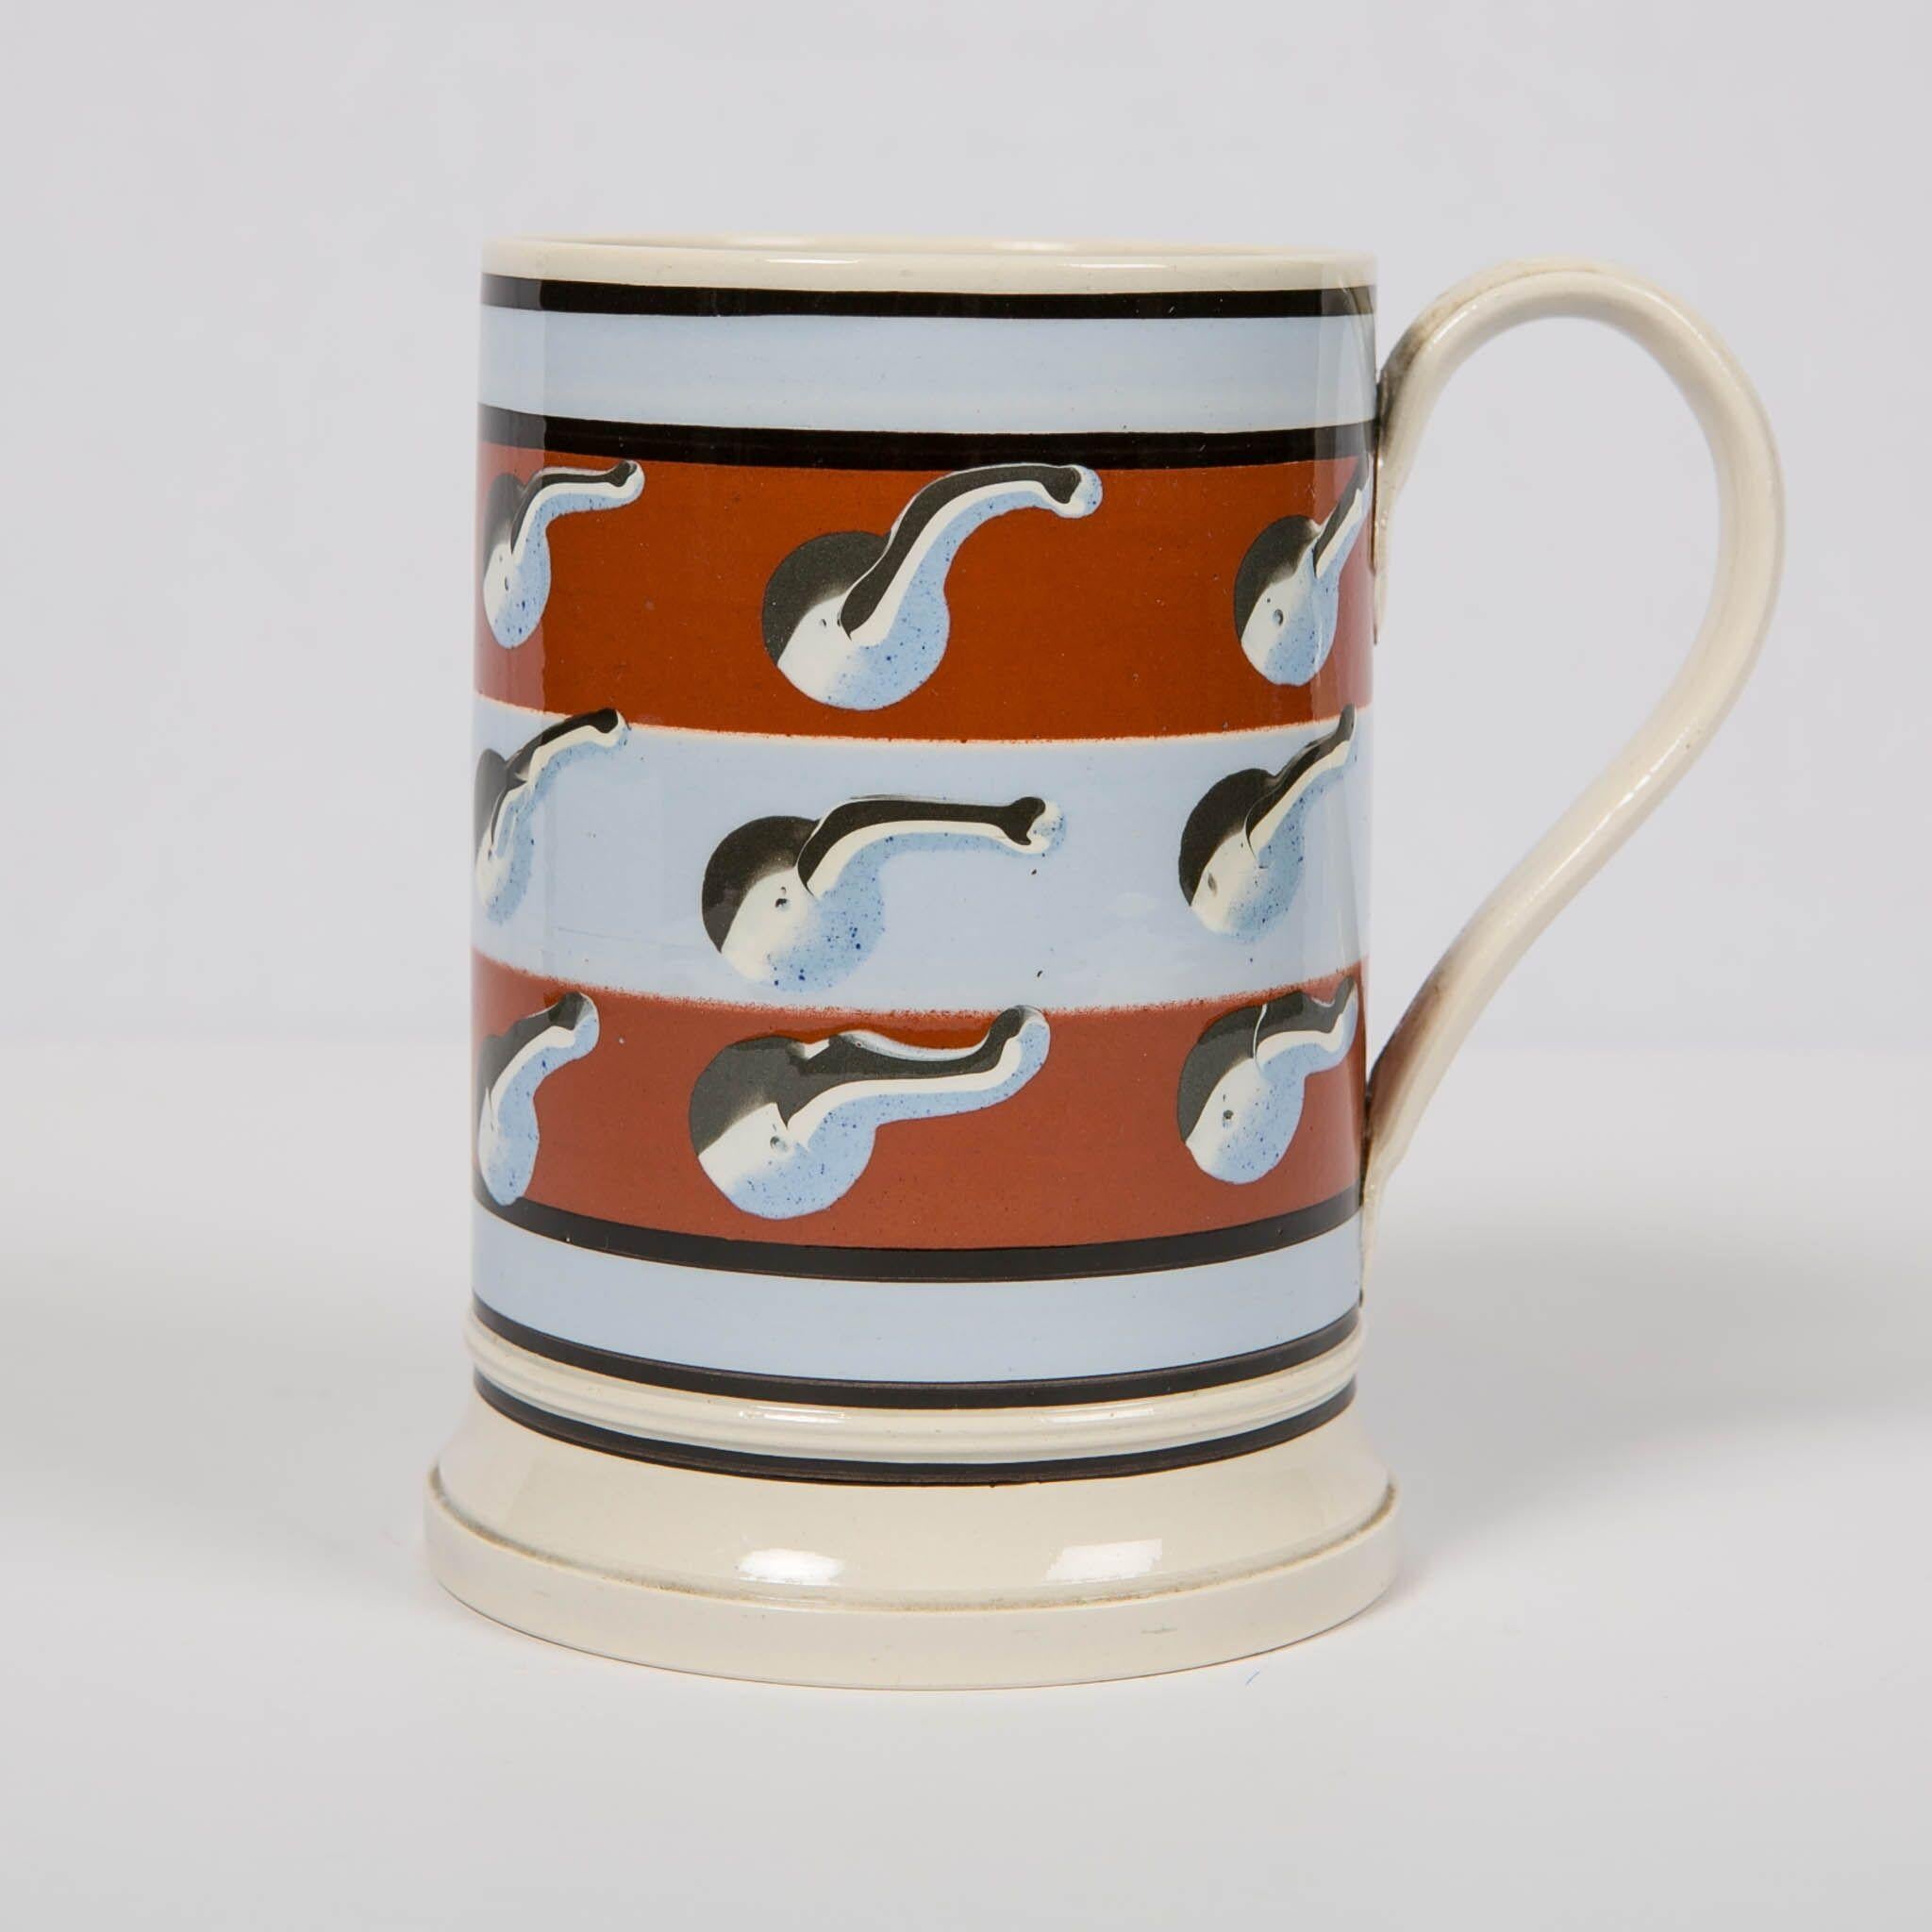 Folk Art Modern Mochaware Mug Made by Don Carpentier in 1993